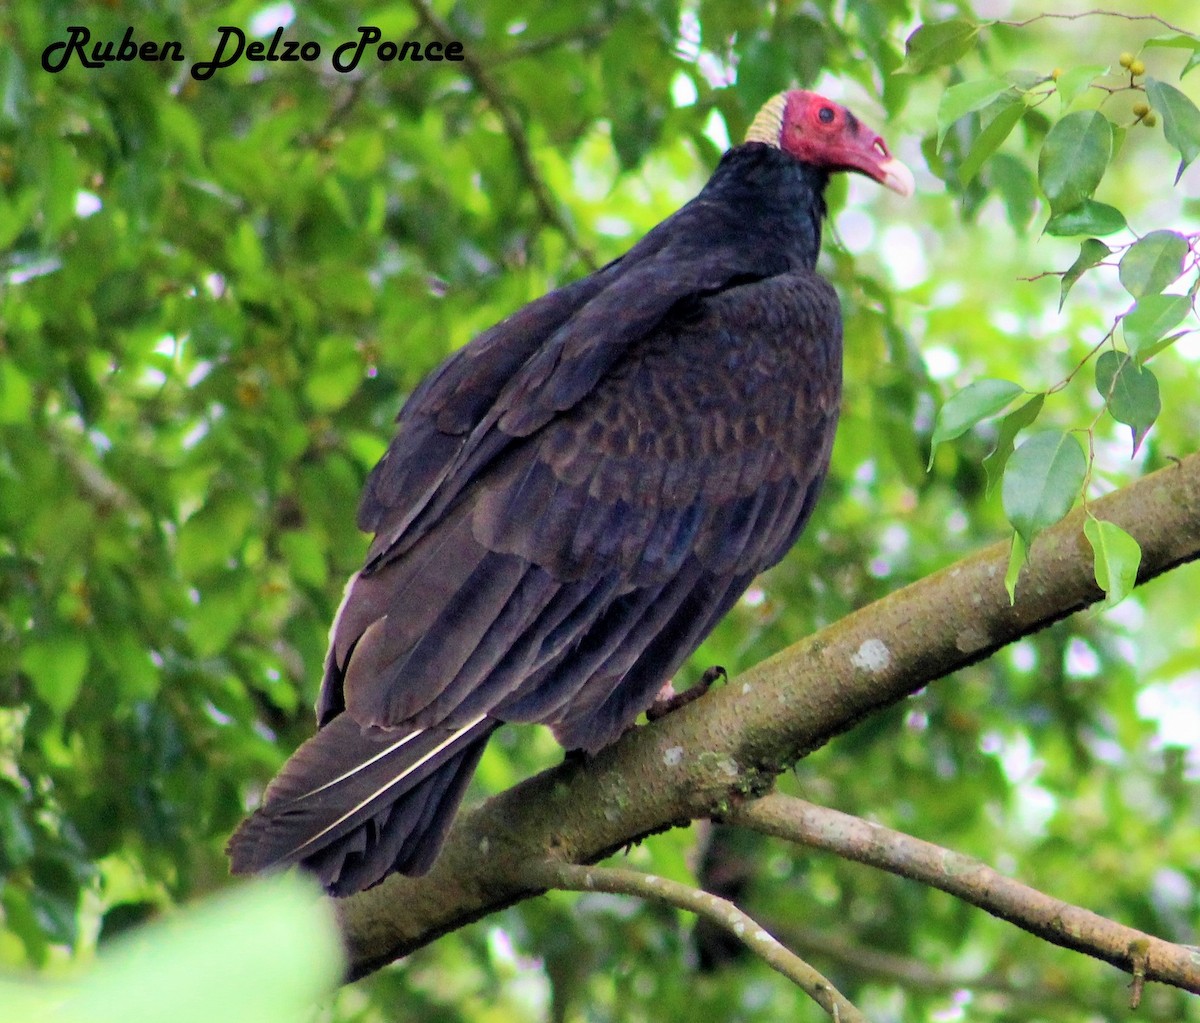 Turkey Vulture - RUBEN DELZO PONCE